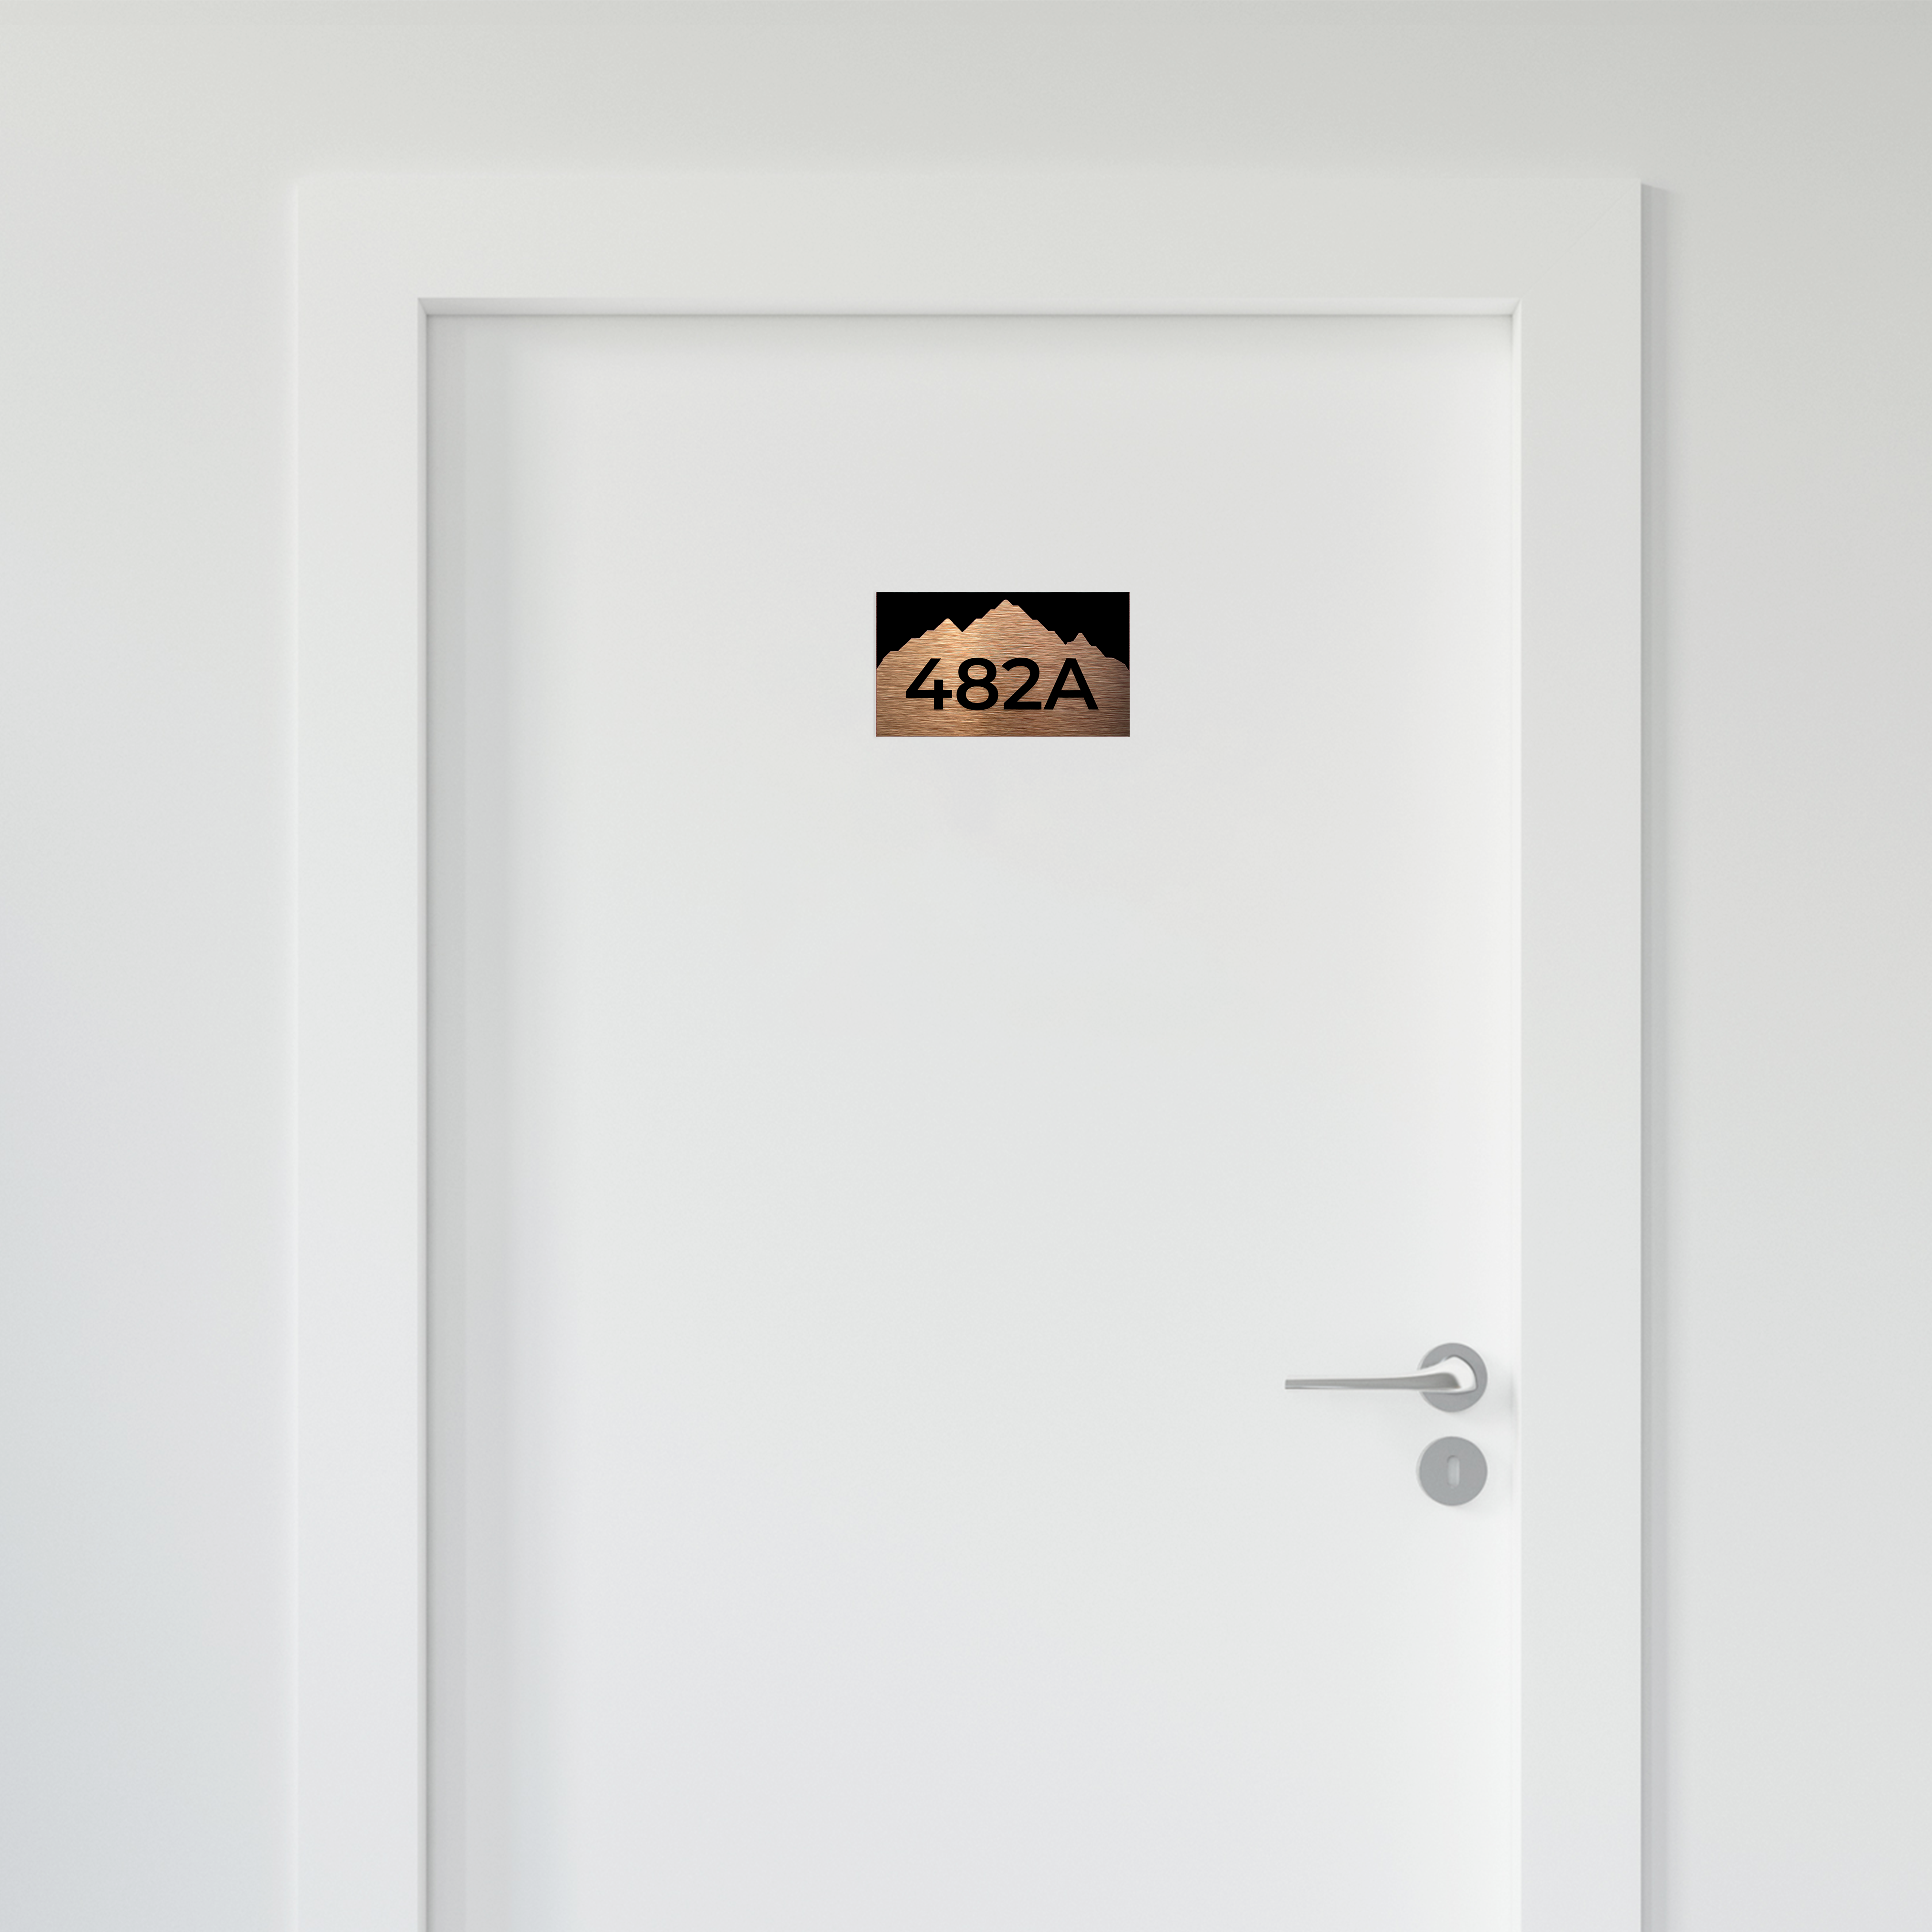 BRONZE HOTEL ROOM NUMBERS - ALUMADESIGNCO Door Signs - Custom Door Signs For Business & Office